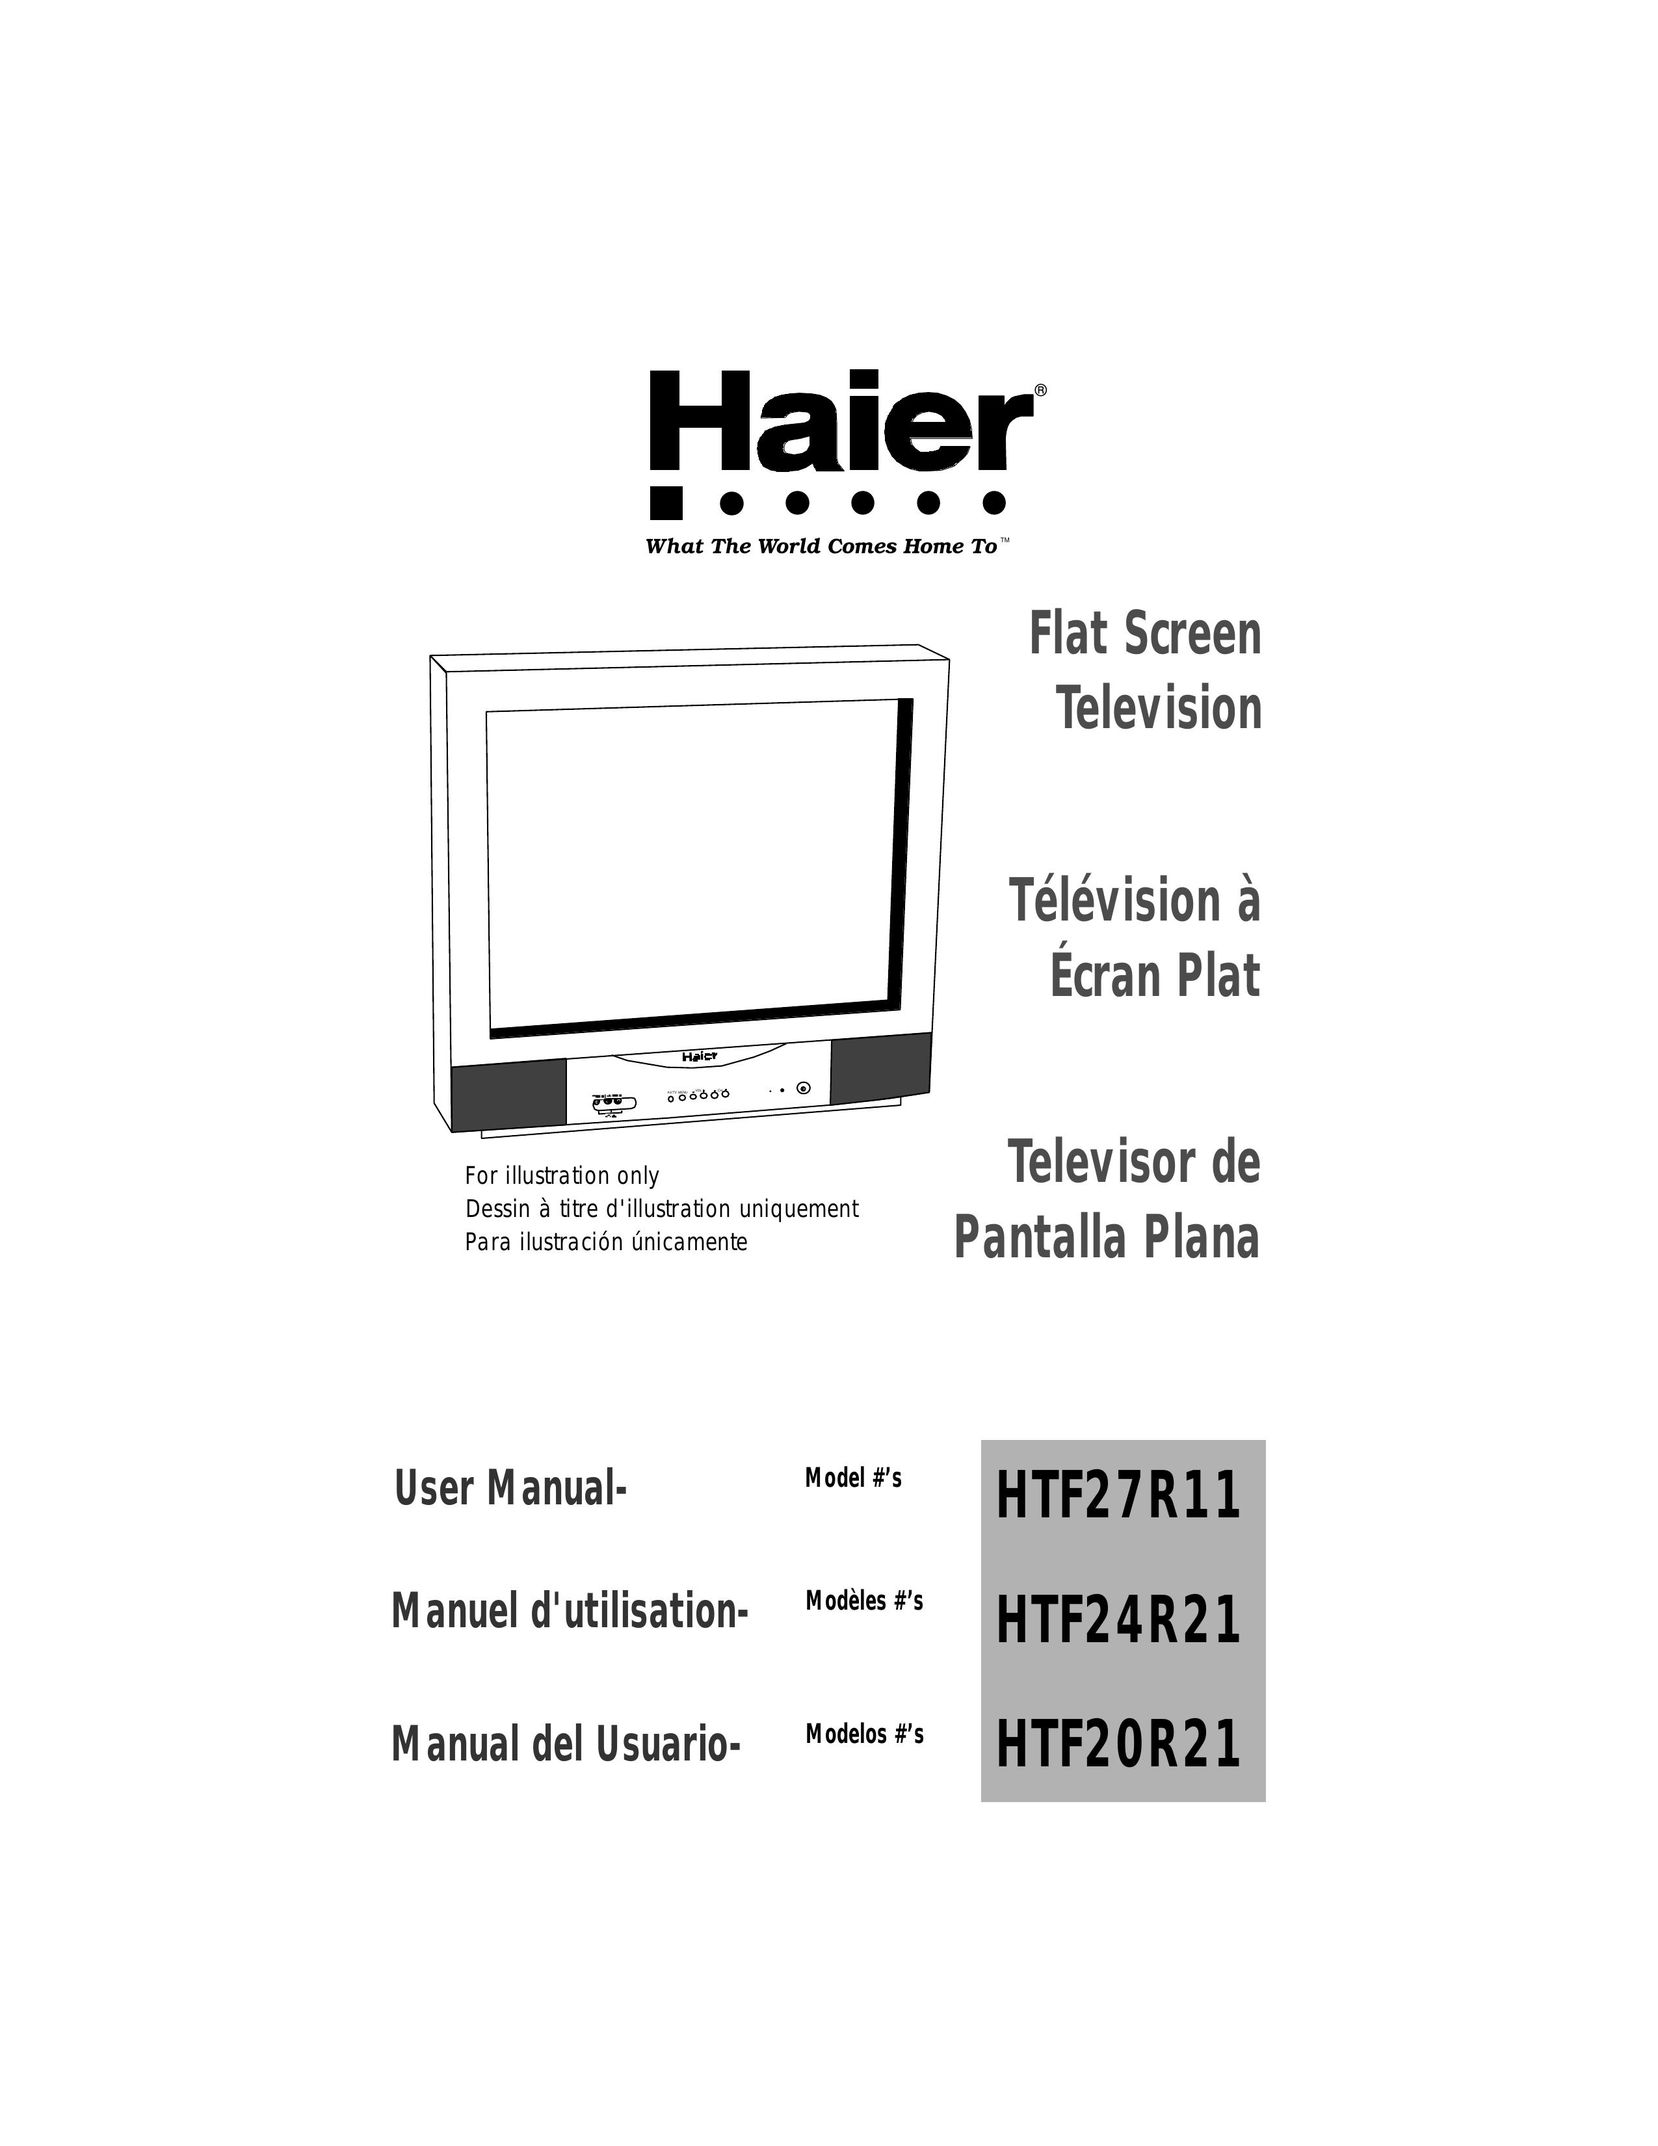 Haier HTF24R21 CRT Television User Manual